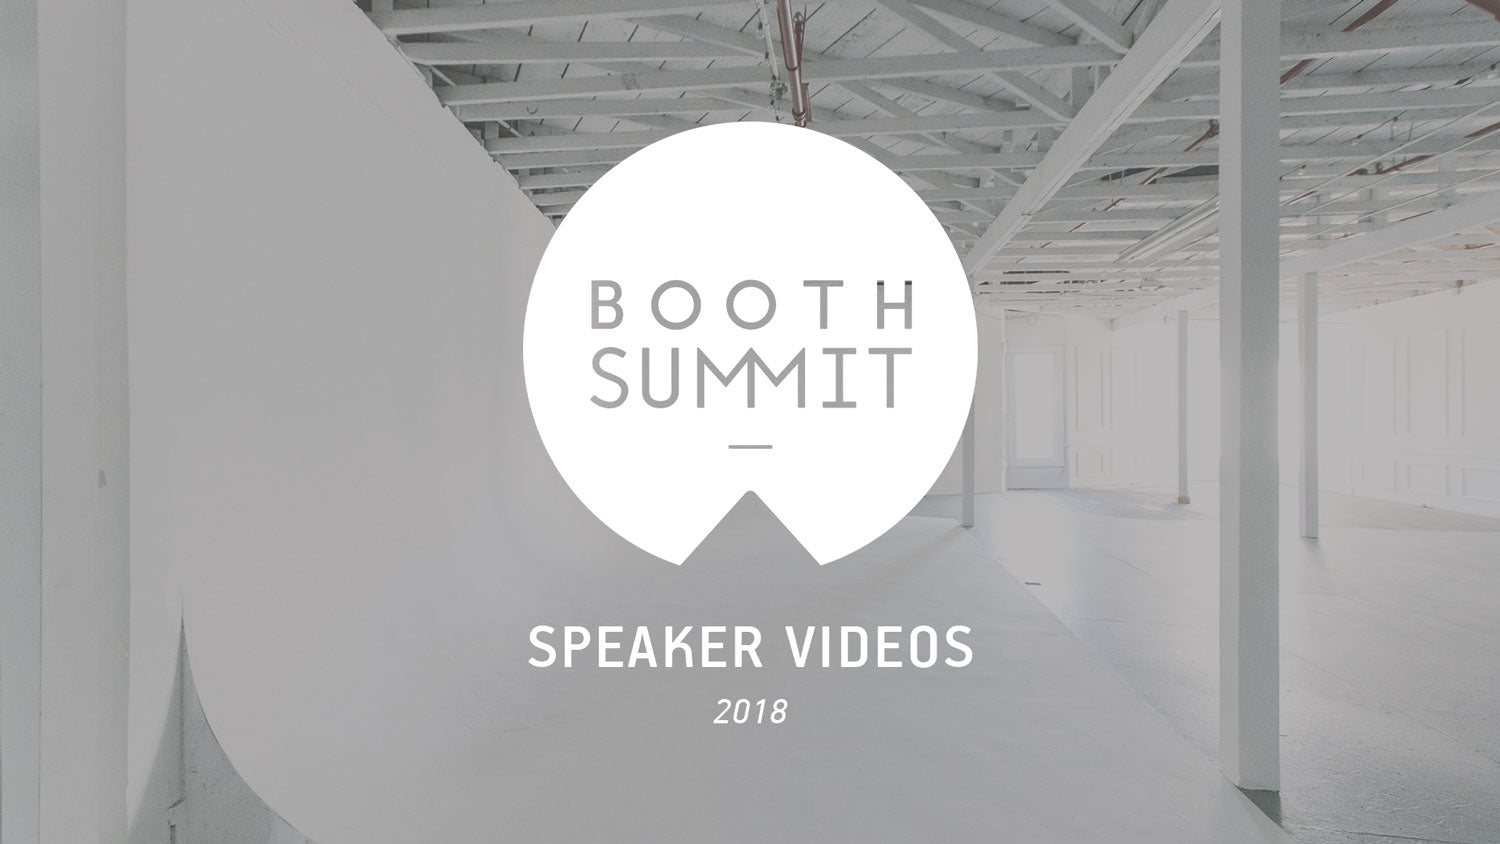 Booth Summit 2018 Speaker Videos